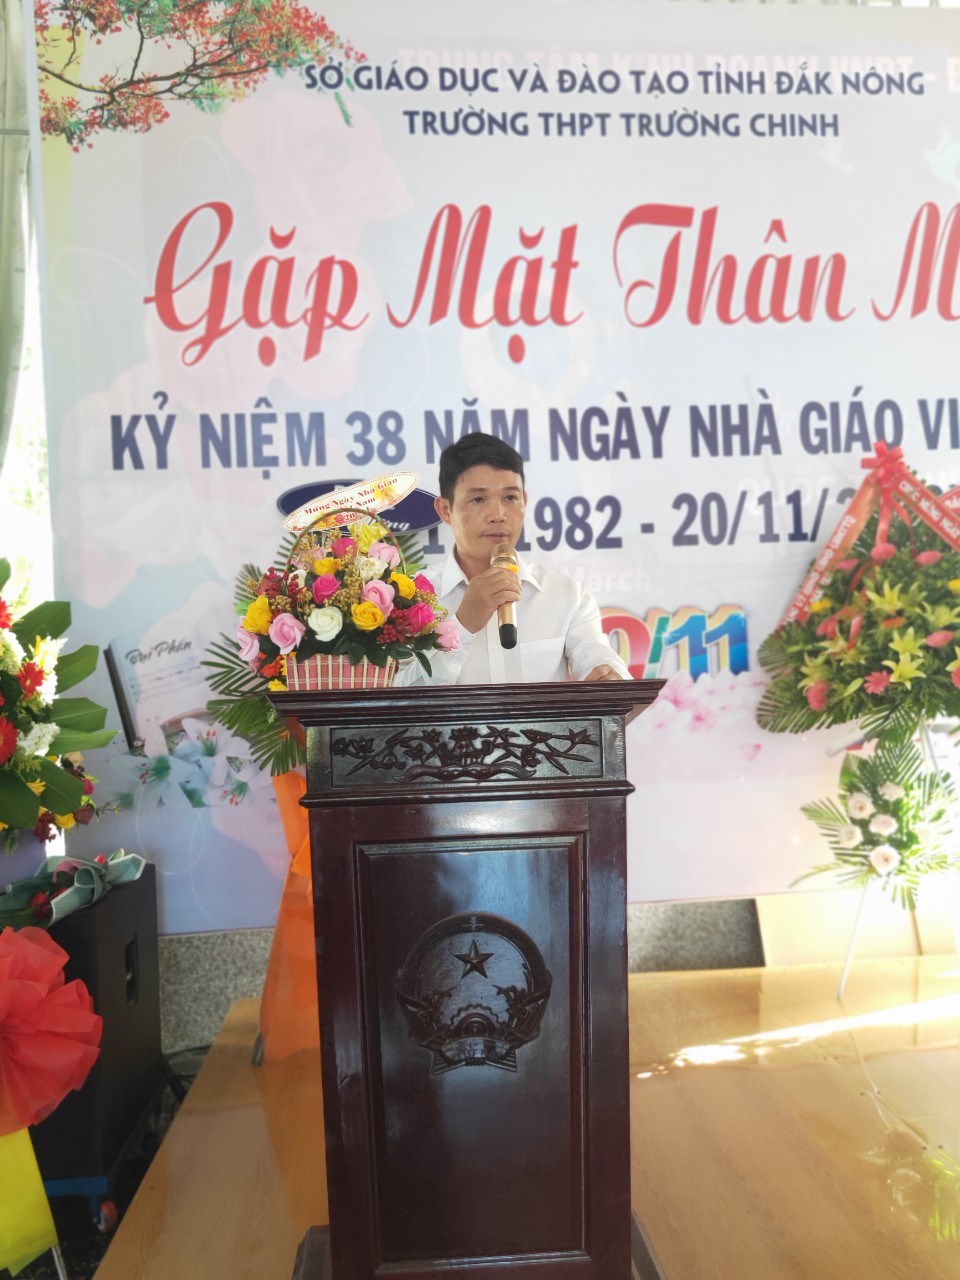 Trường THPT Trường Chinh tổ chức buổi gặp mặt thân mật cho cán bộ công nhân viên nhà trường nhân ngày Nhà giáo Việt Nam 20.11